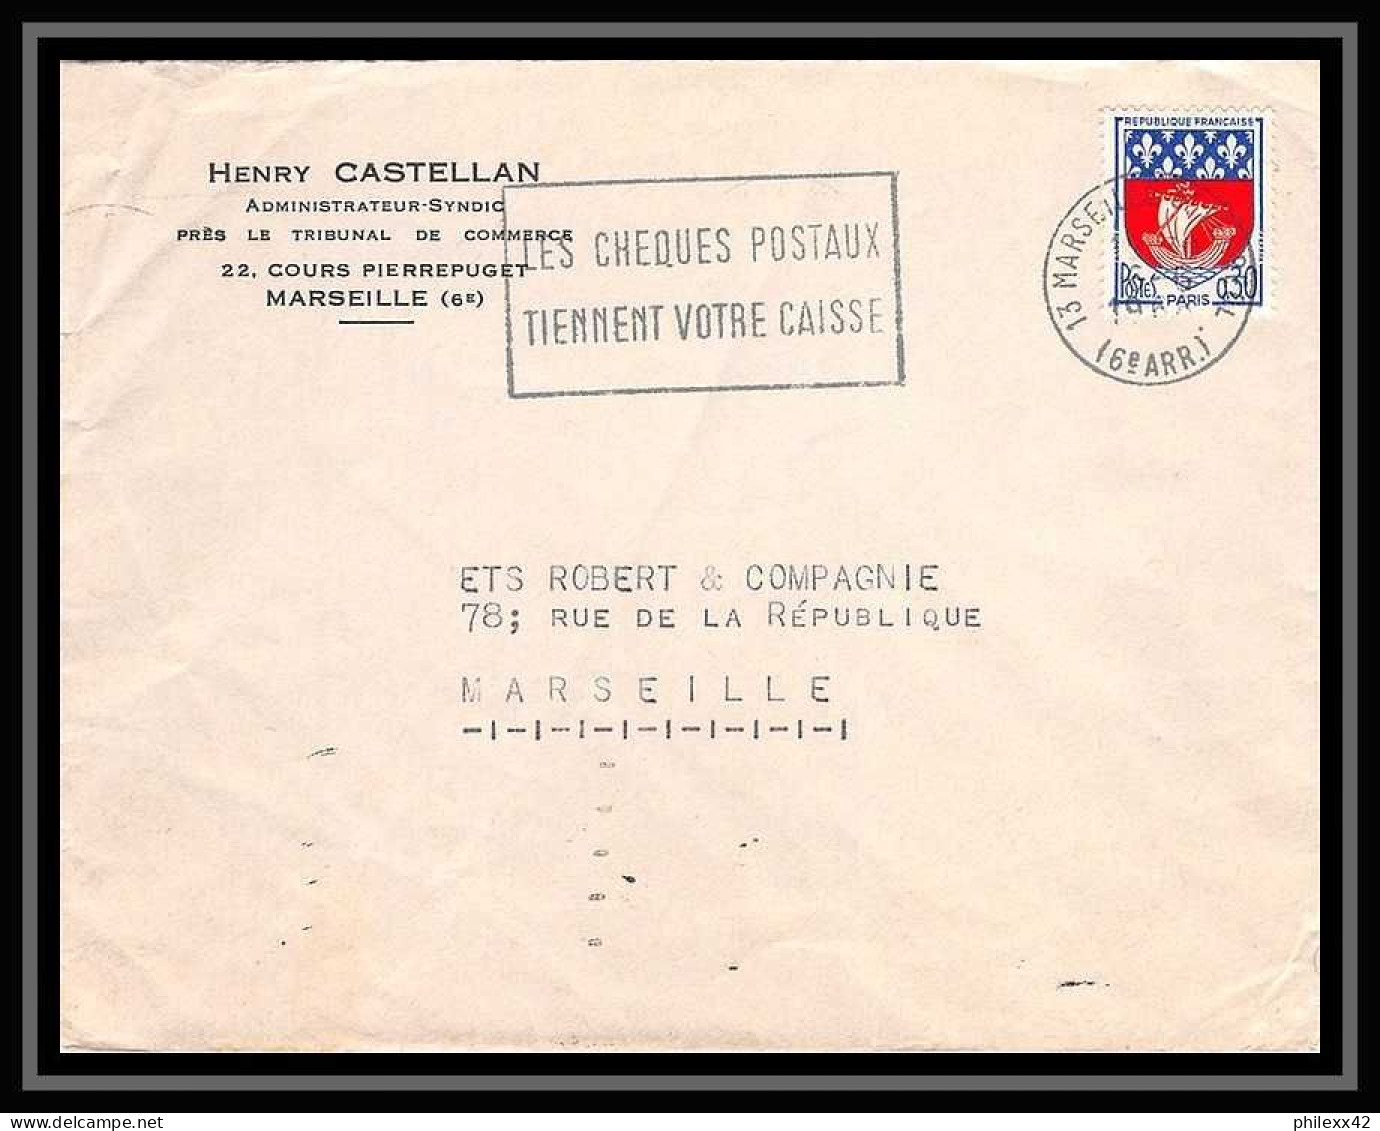 108403 lot de 11 Lettres Bouches du rhone flamme les chèques postaux Marseille saint ferréol